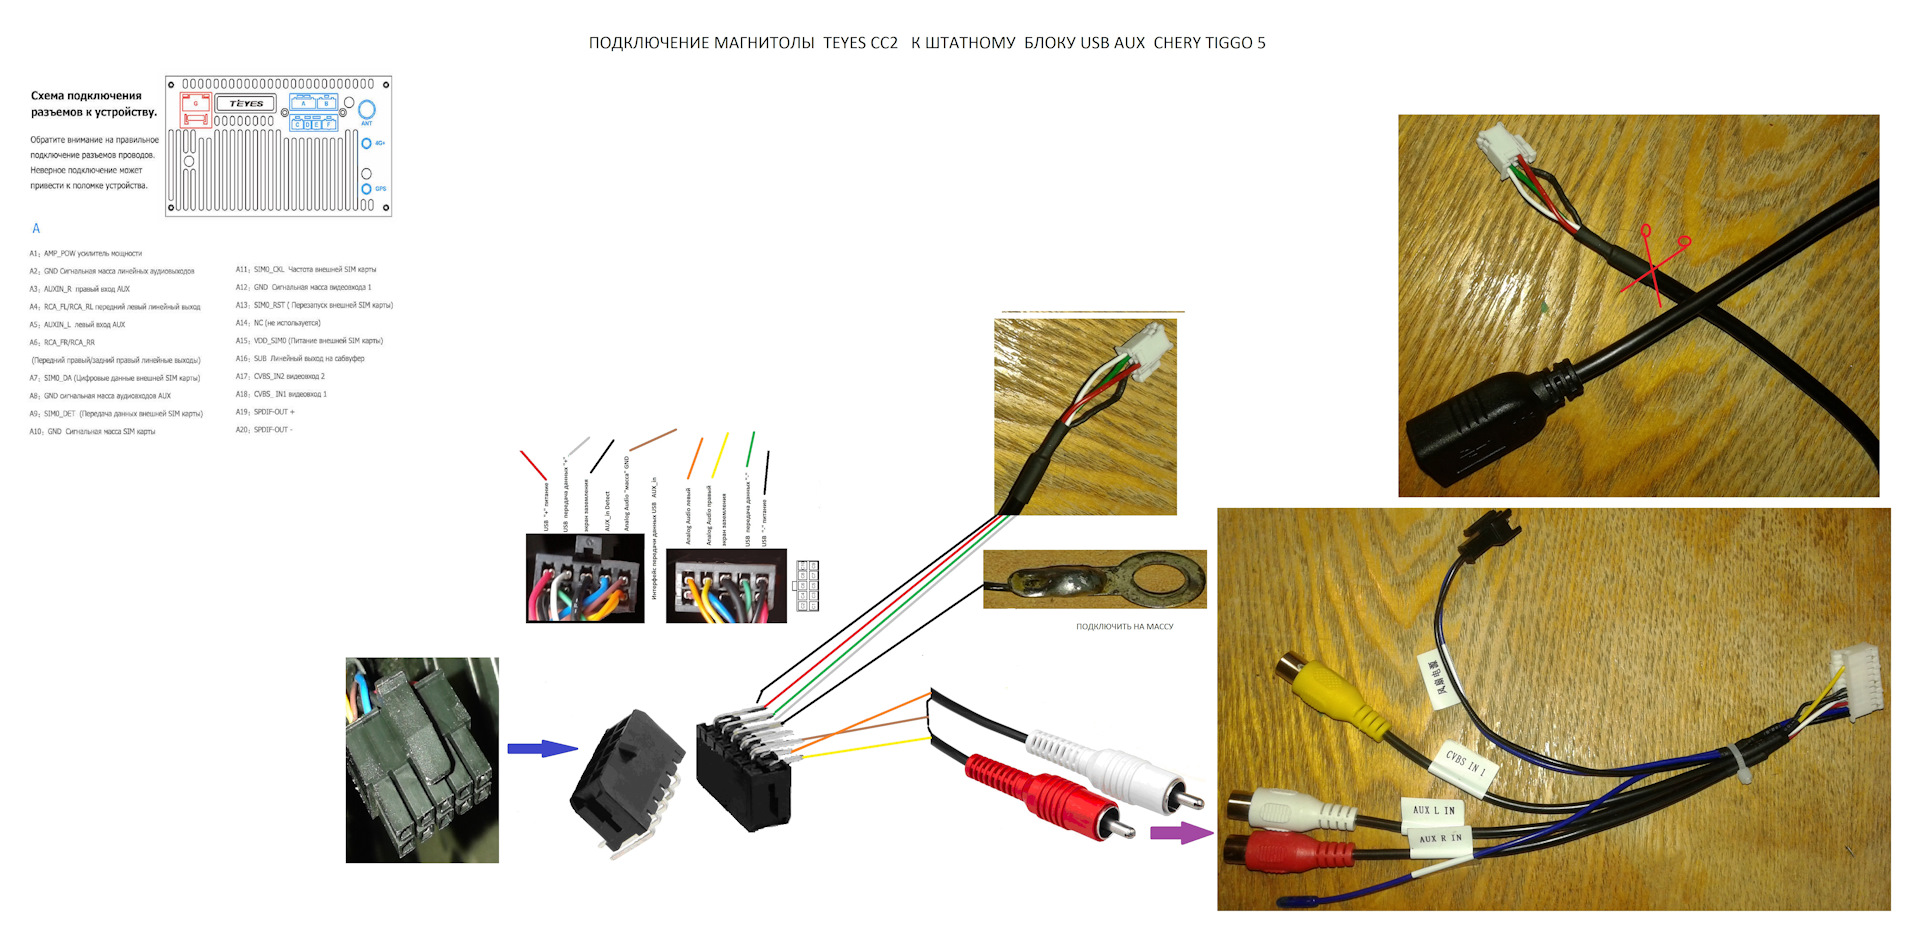 Как подключить камеру teyes. Схема подключения магнитолы Teyes сс3. RCA кабель для магнитолы Teyes cc3. Кабель для подключения штатного разъема USB С Teyes cc3. Chery Tiggo 4 разъемы для USB.